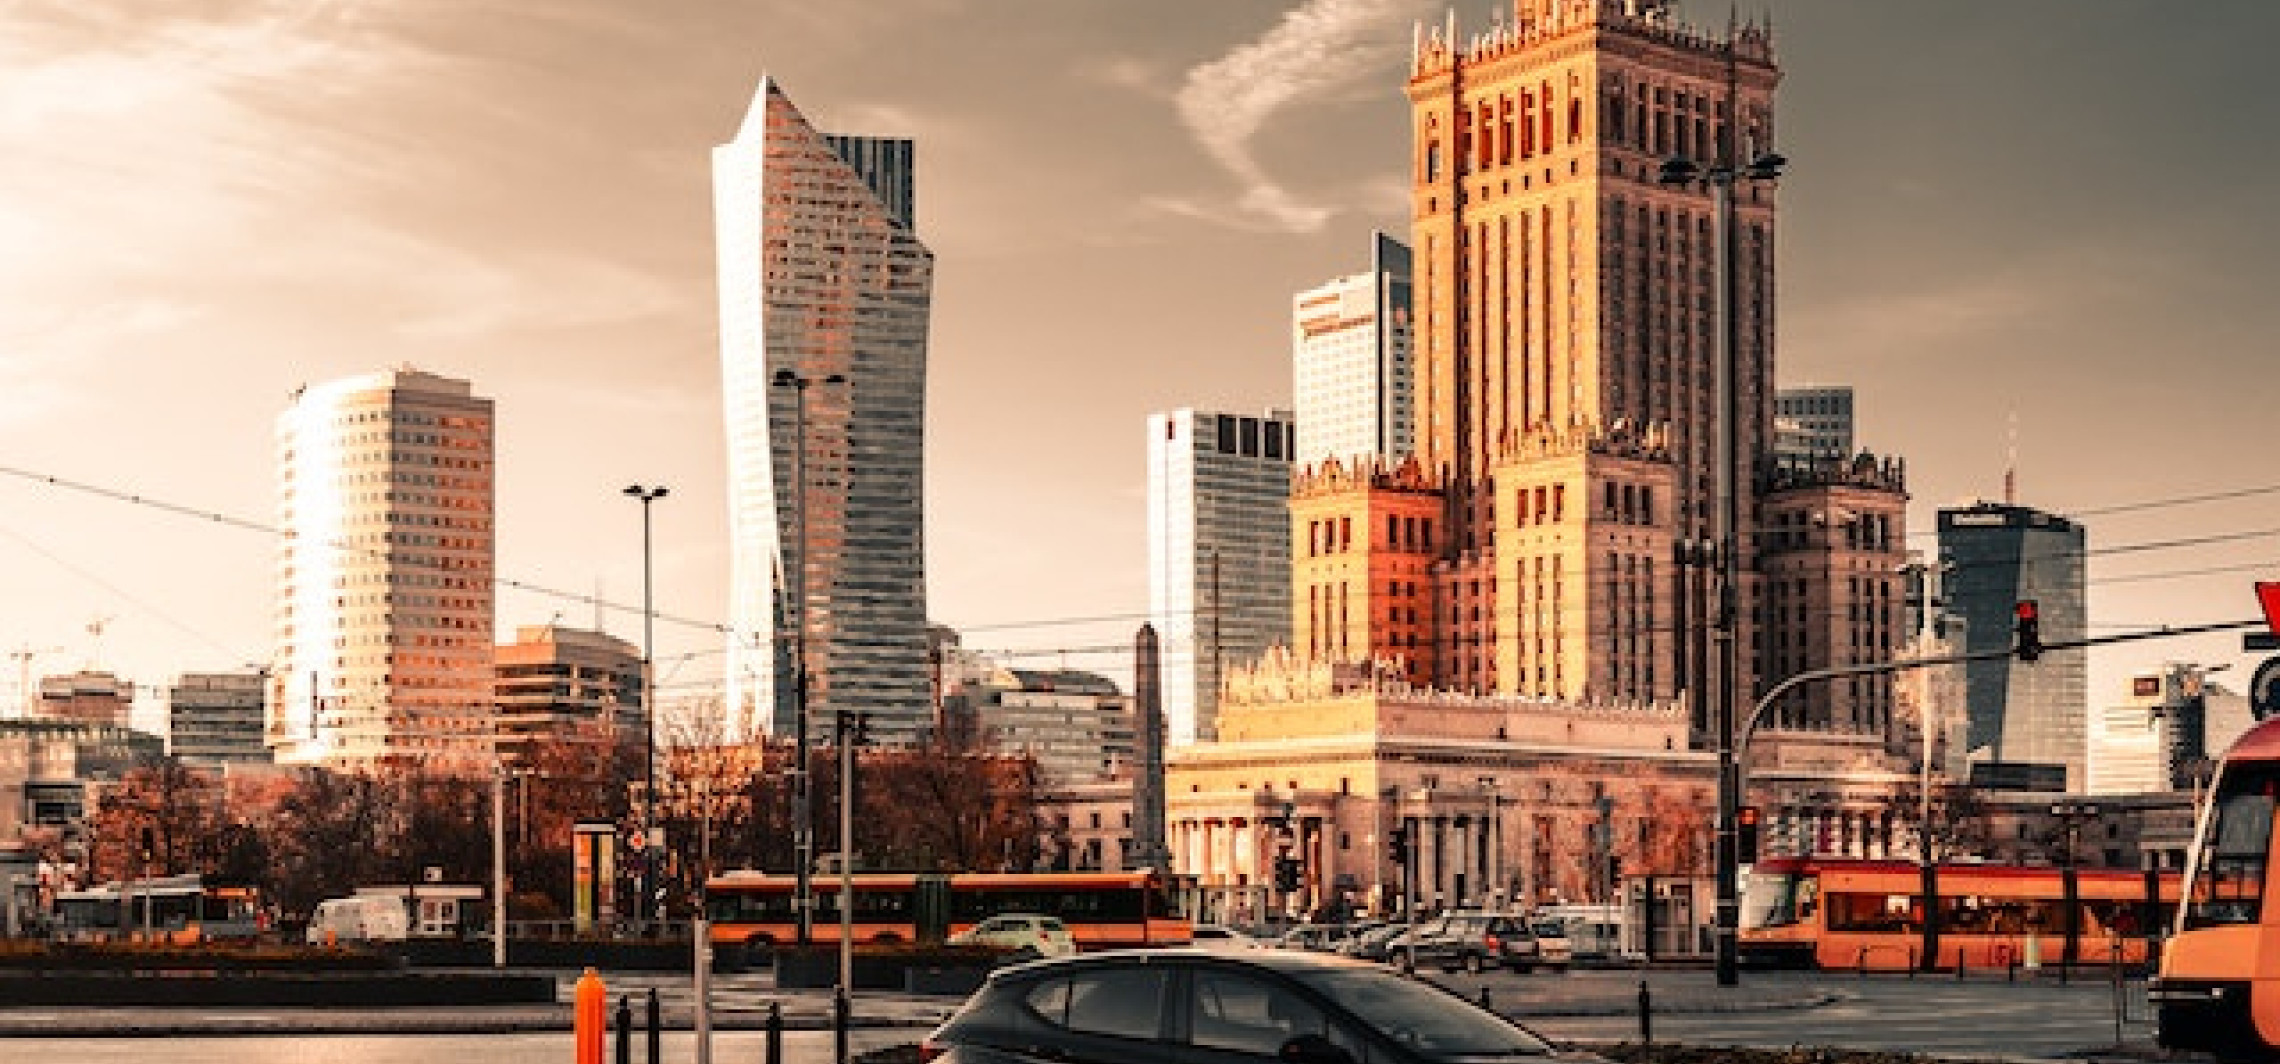 Region - Jak znaleźć najlepsze biuro nieruchomości w Warszawie?